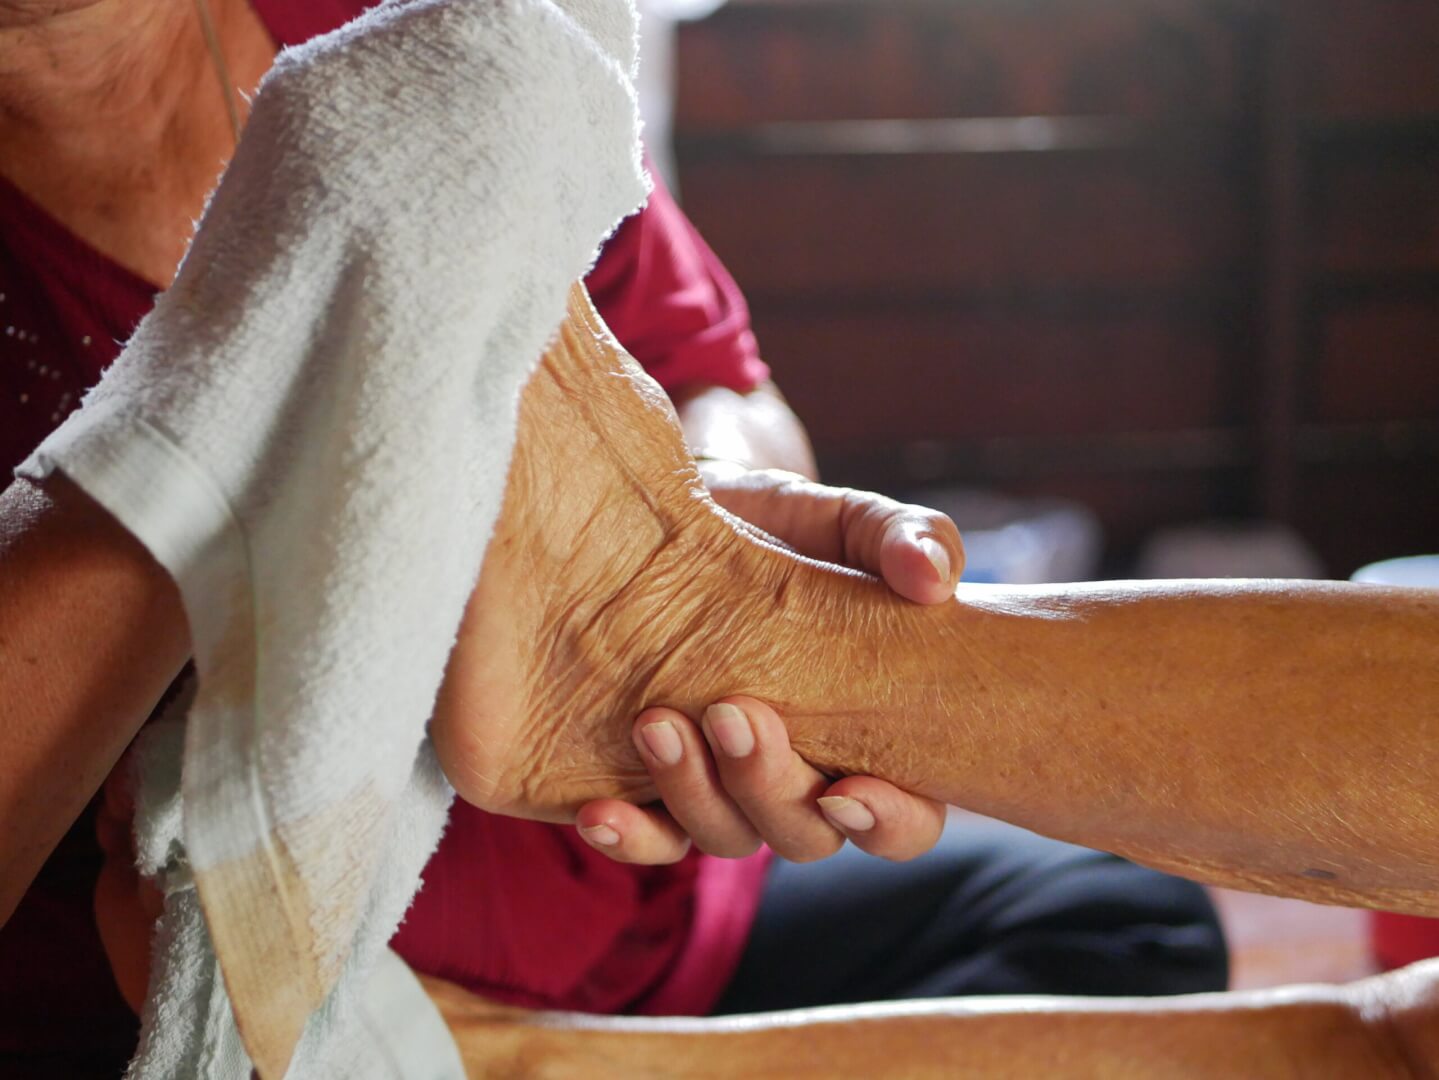 Un acompañante seca el pie de una persona mayor ante un posible caso de hipotermia.